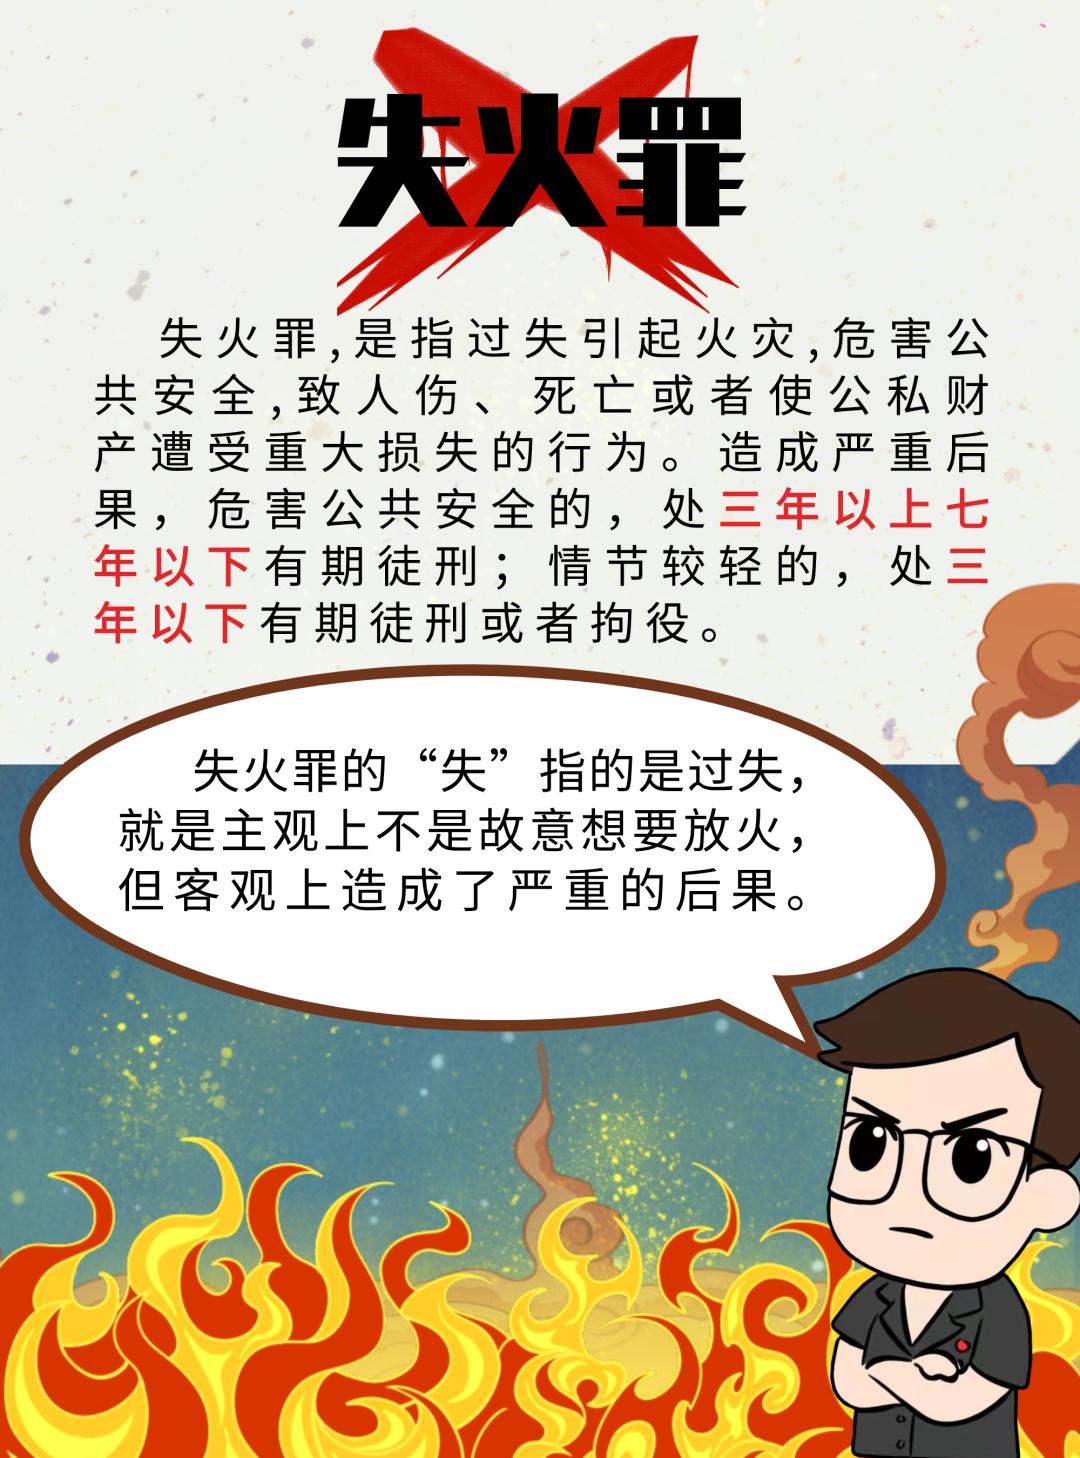 每年春节期间因祭拜烧纸,燃放烟花炮竹,不规范用火等引发的火灾事件屡